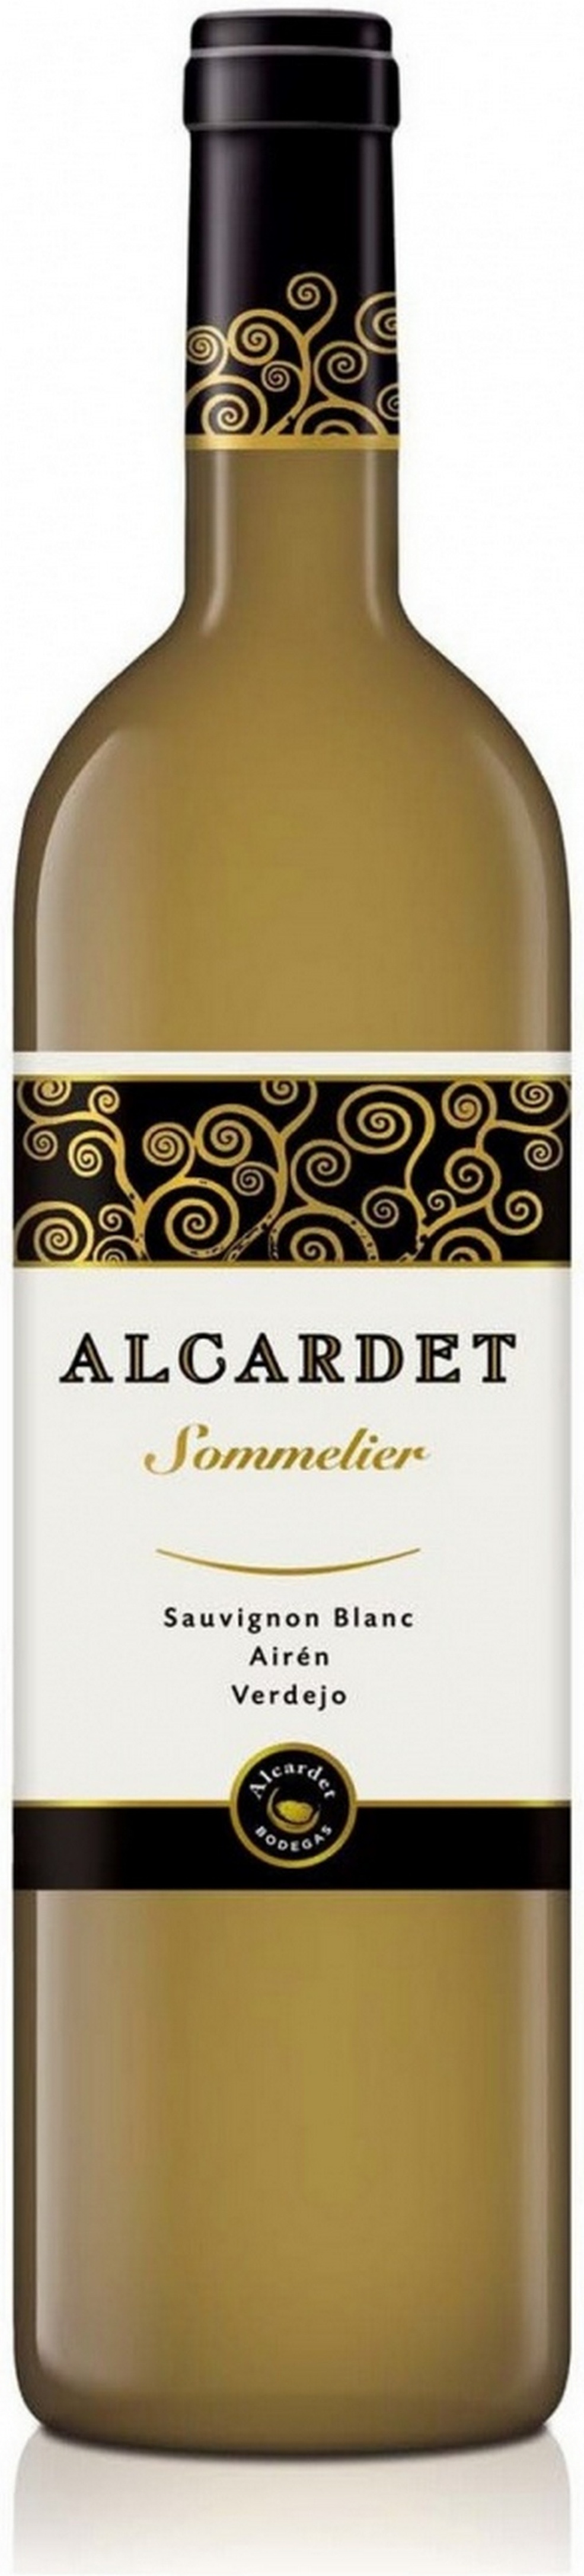 alcardet-sommelier-sauvignon-blanc-2018